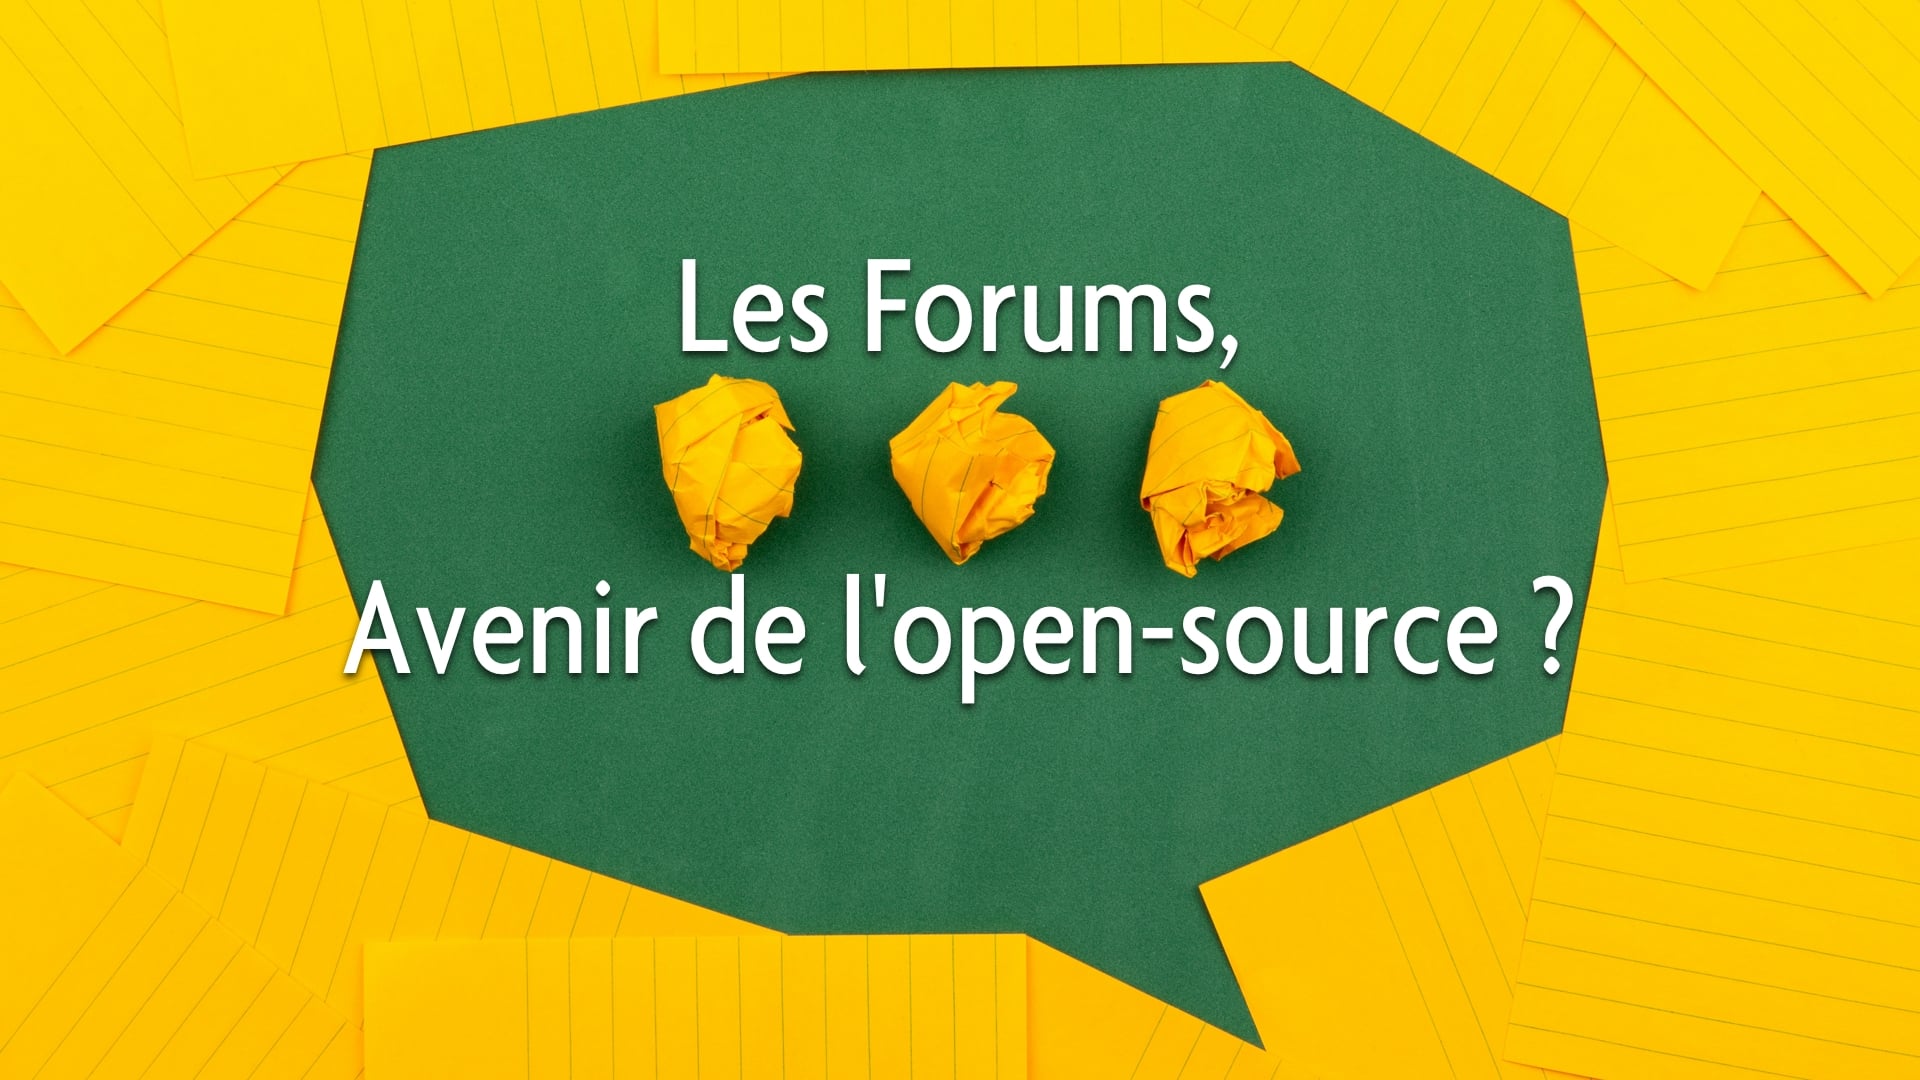 Les forums seront-ils toujours l'avenir du monde de l'open-source ?